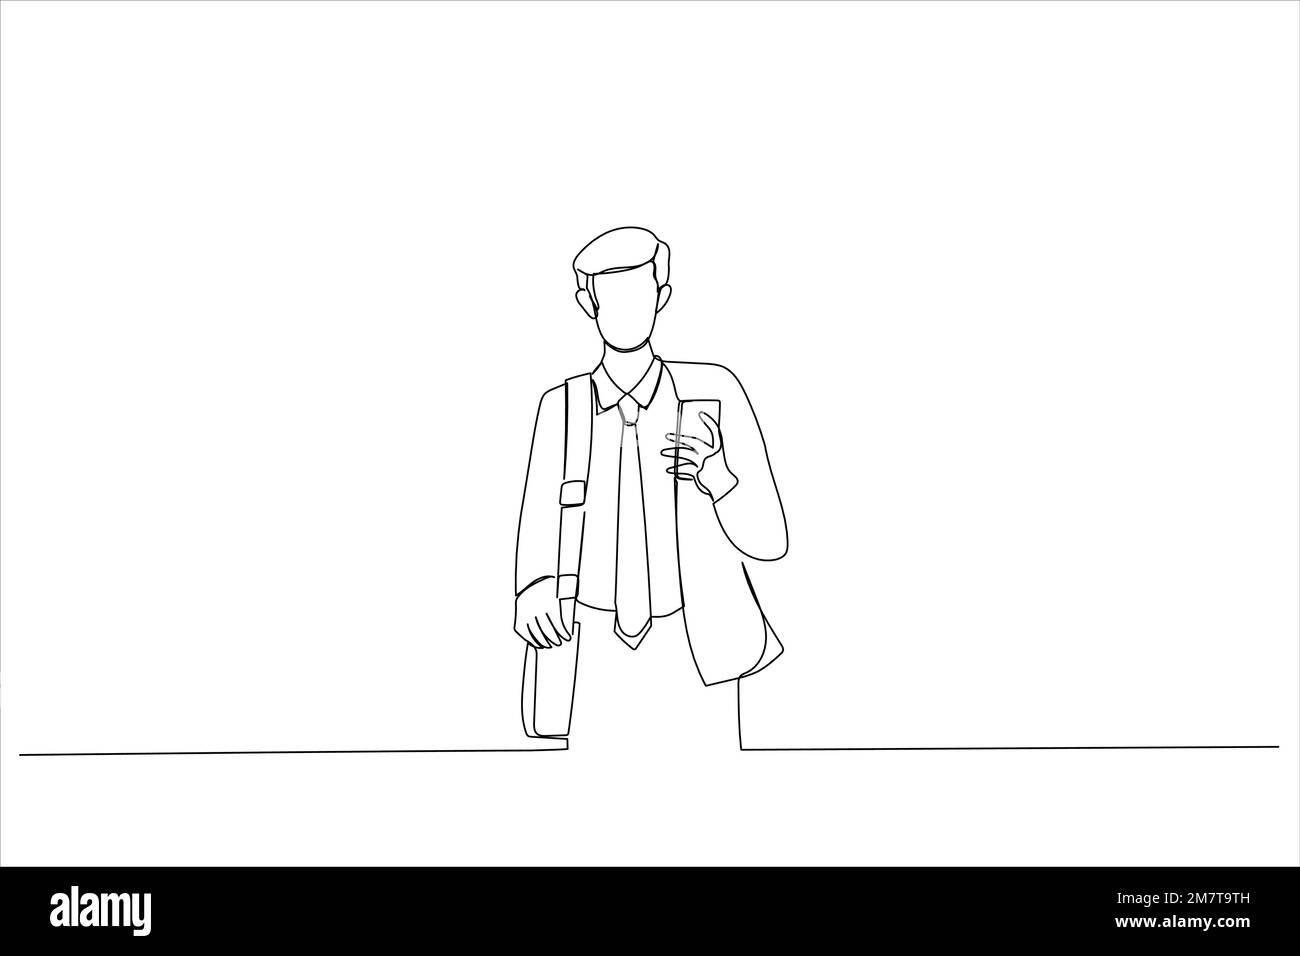 Cartone animato di un giovane uomo d'affari che guarda i messaggi sul cellulare mentre cammina per strada in centro. Stile artistico a linea continua Illustrazione Vettoriale